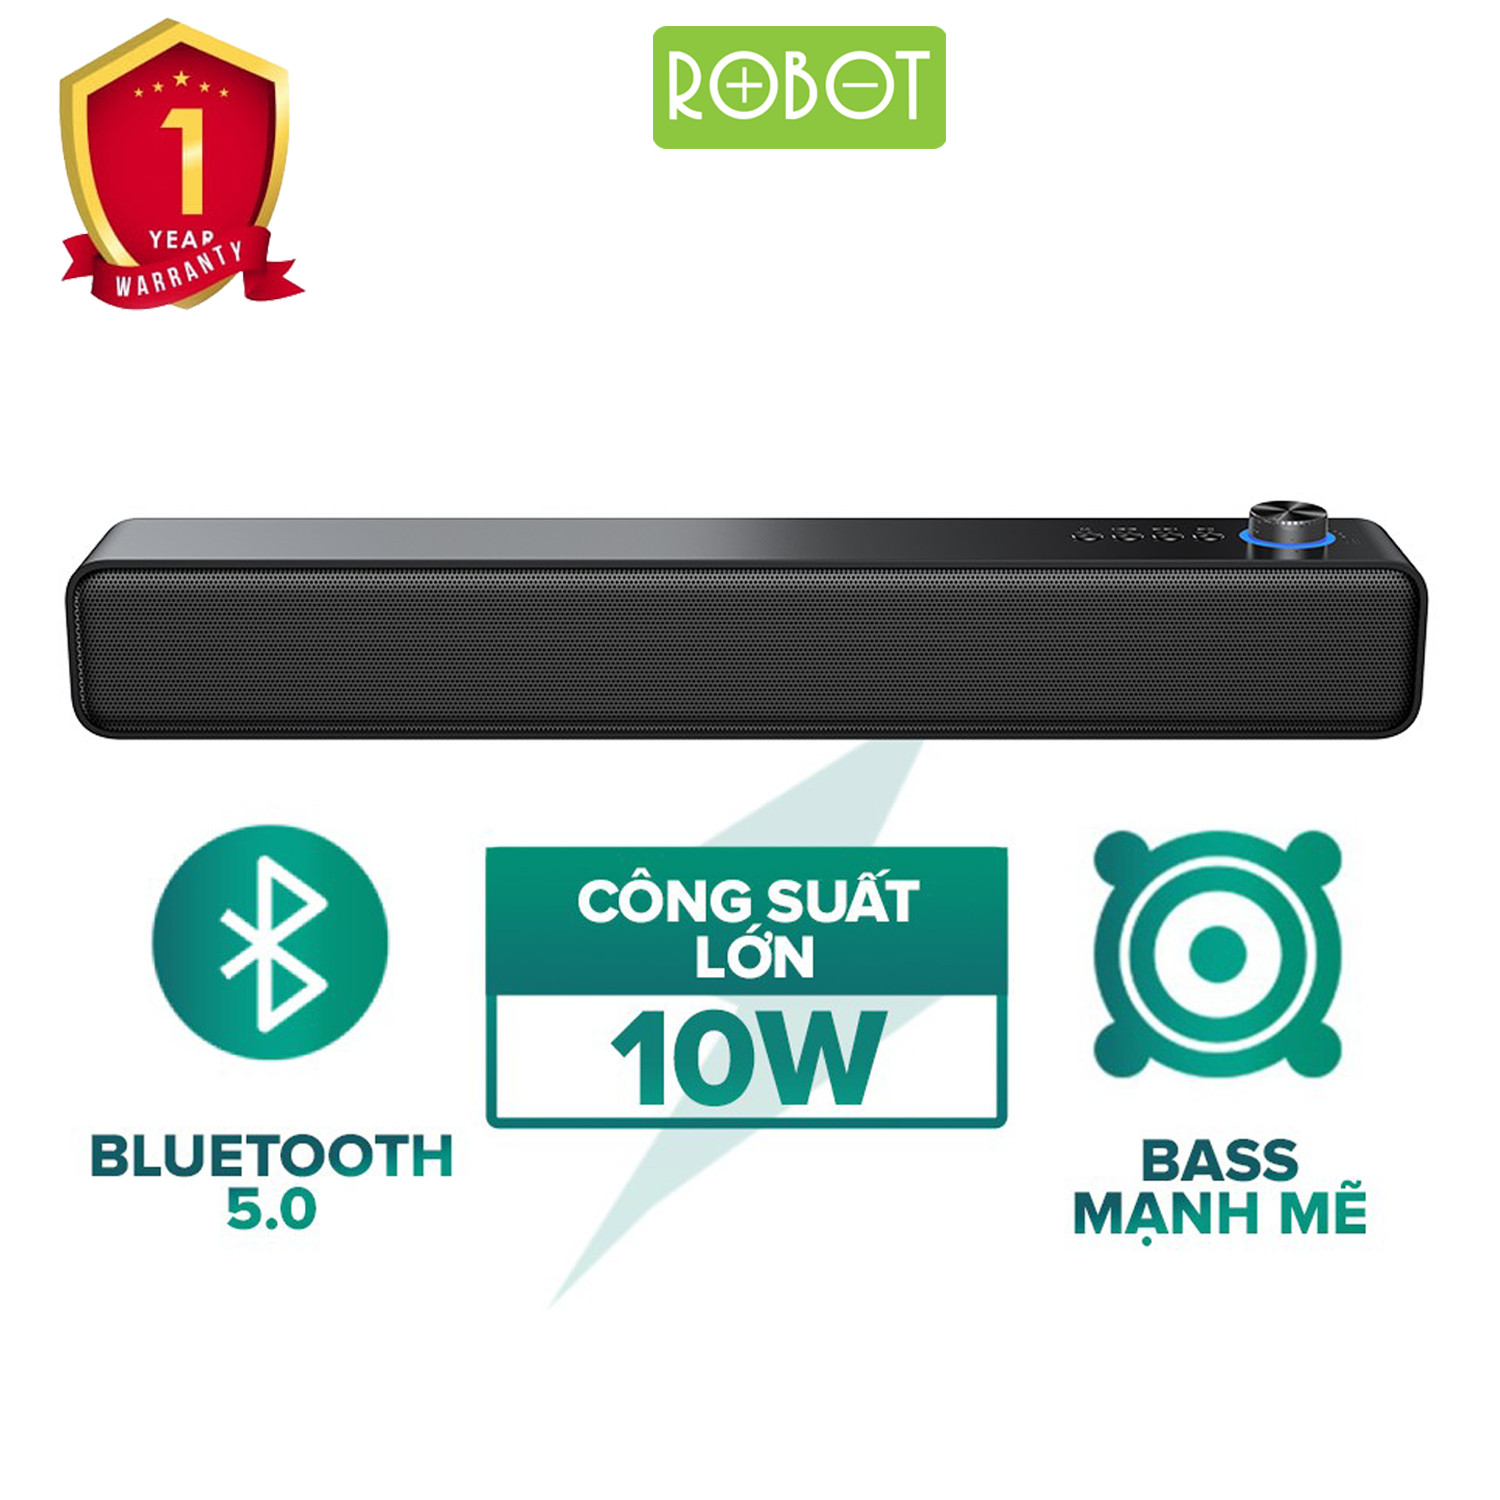 Loa Bluetooth 5.0 ROBOT RB480 Loa Đôi Công Suất 10W - Hàng Chính Hãng